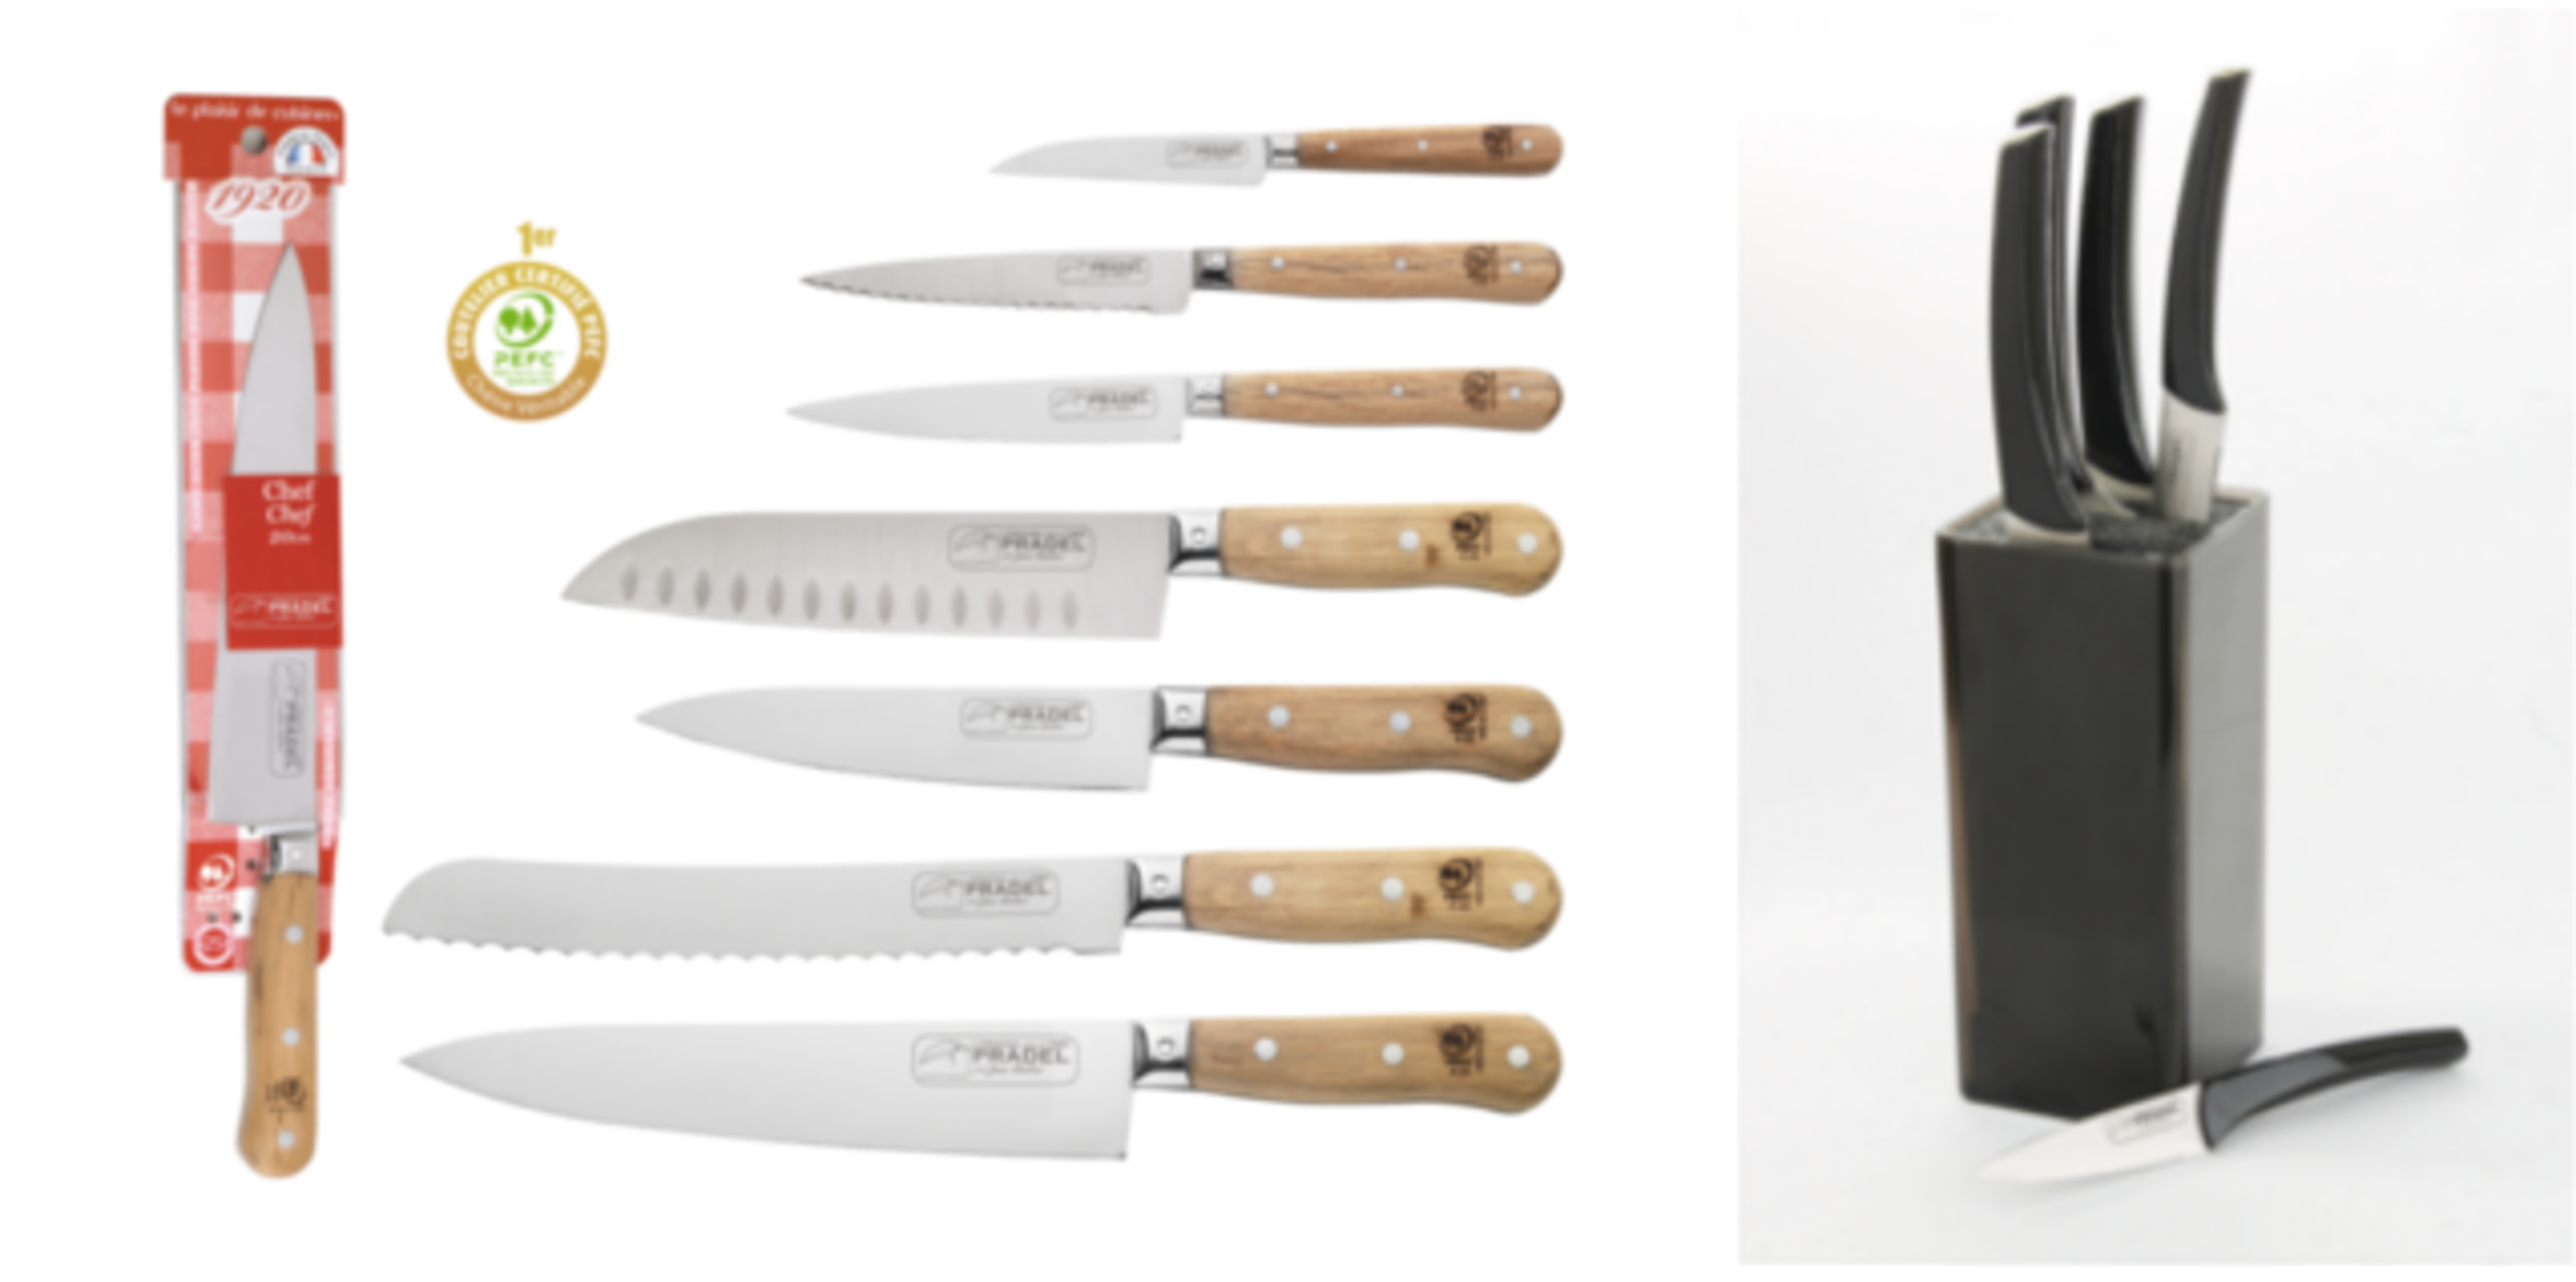 Couteaux de cuisine l'Original Pradel Jean Dubost, Maxi Cuisine octobre 2015